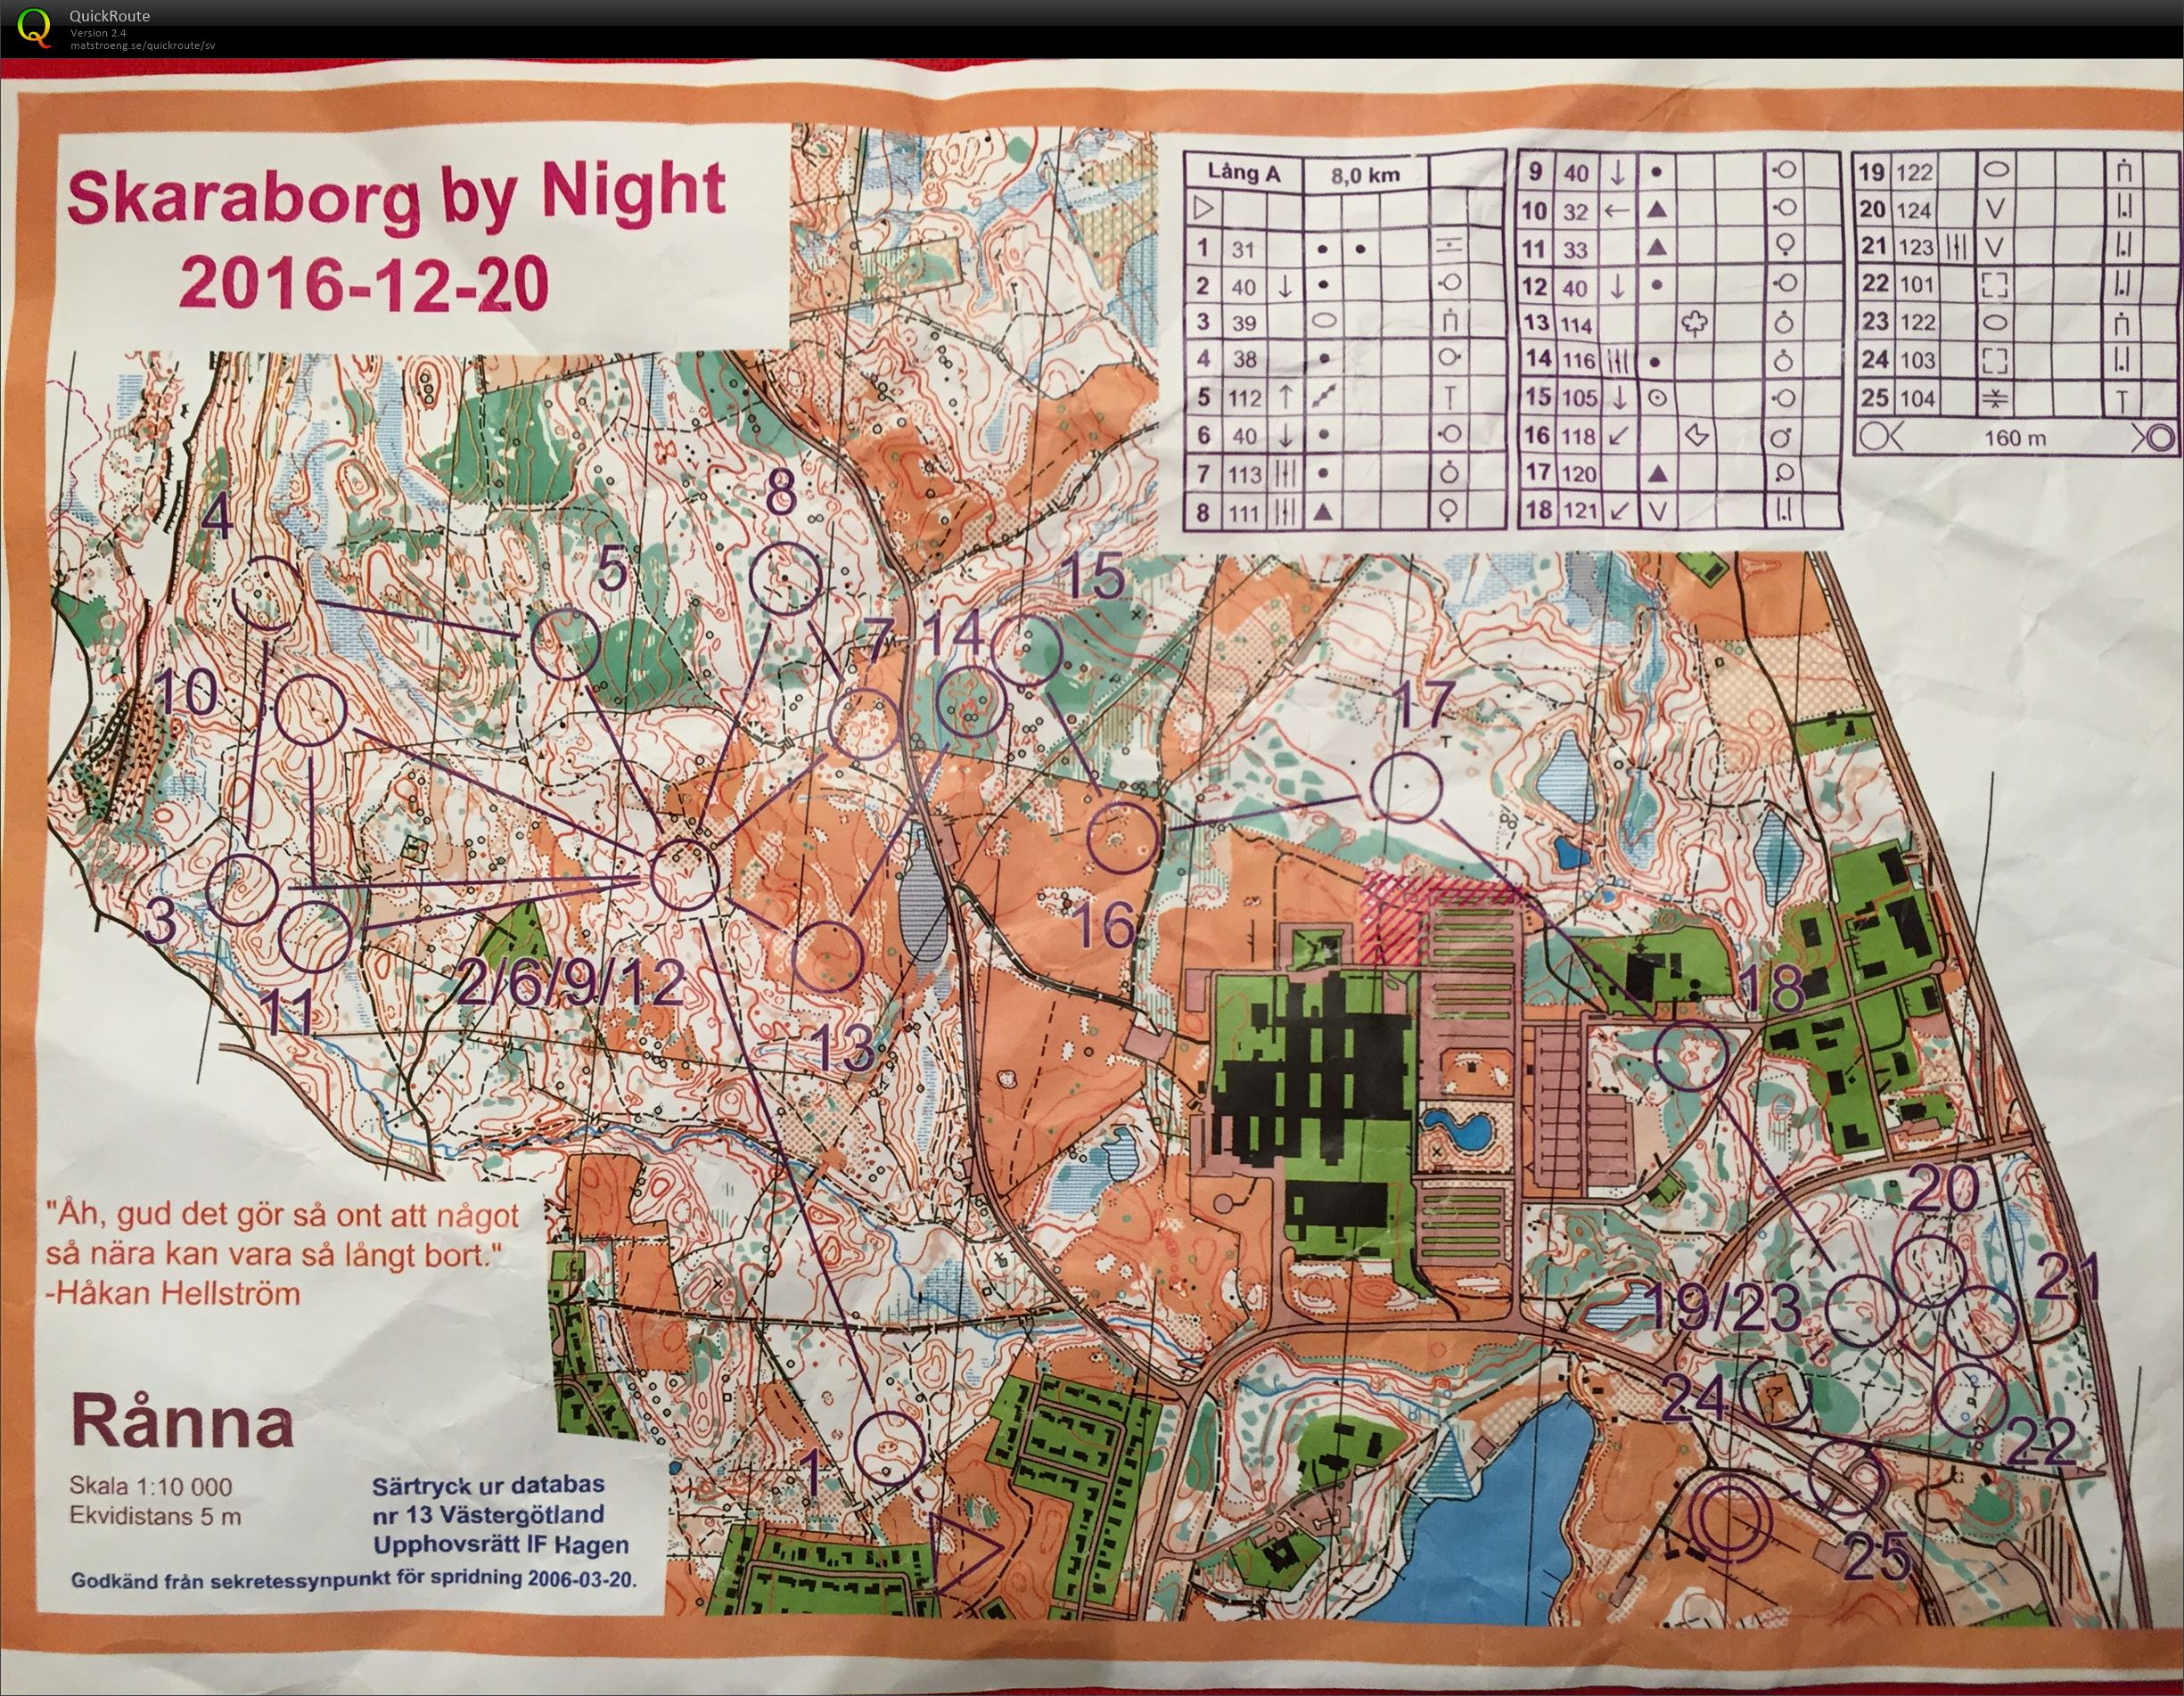 Efterlöpning: Skaraborg by Night (2016-12-22)